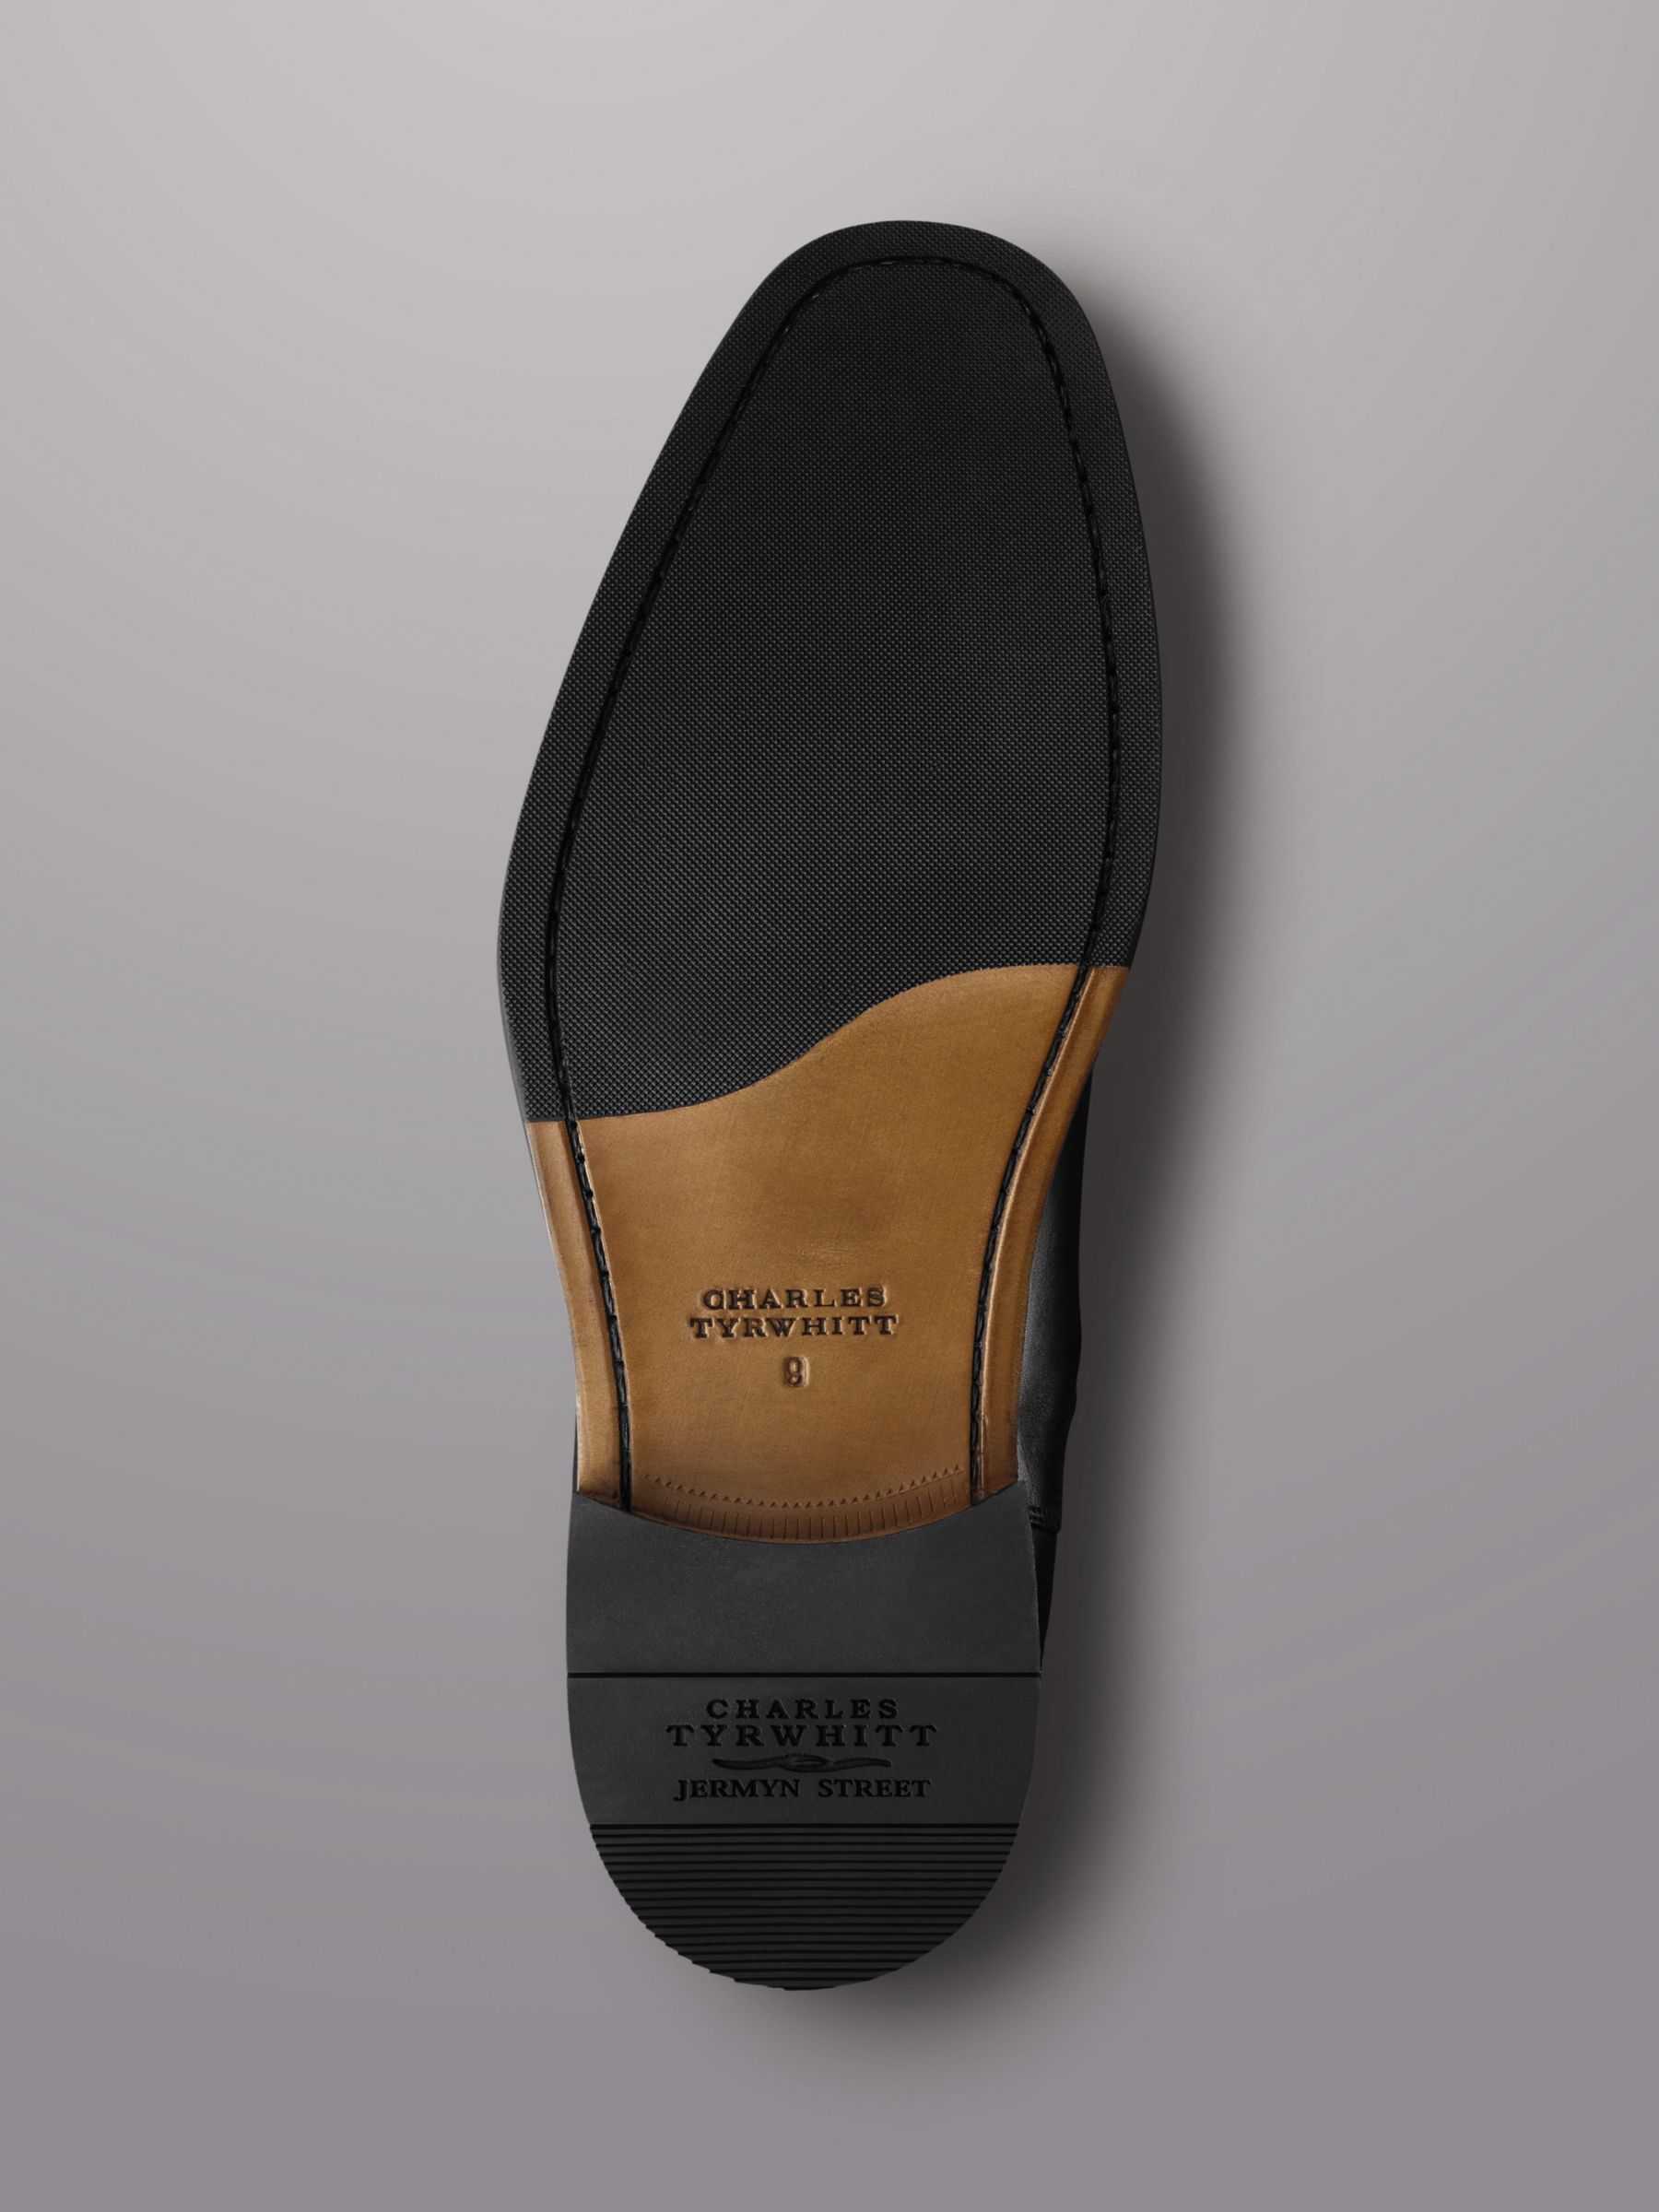 Charles Tyrwhitt Leather Chelsea Boots, Black, 10